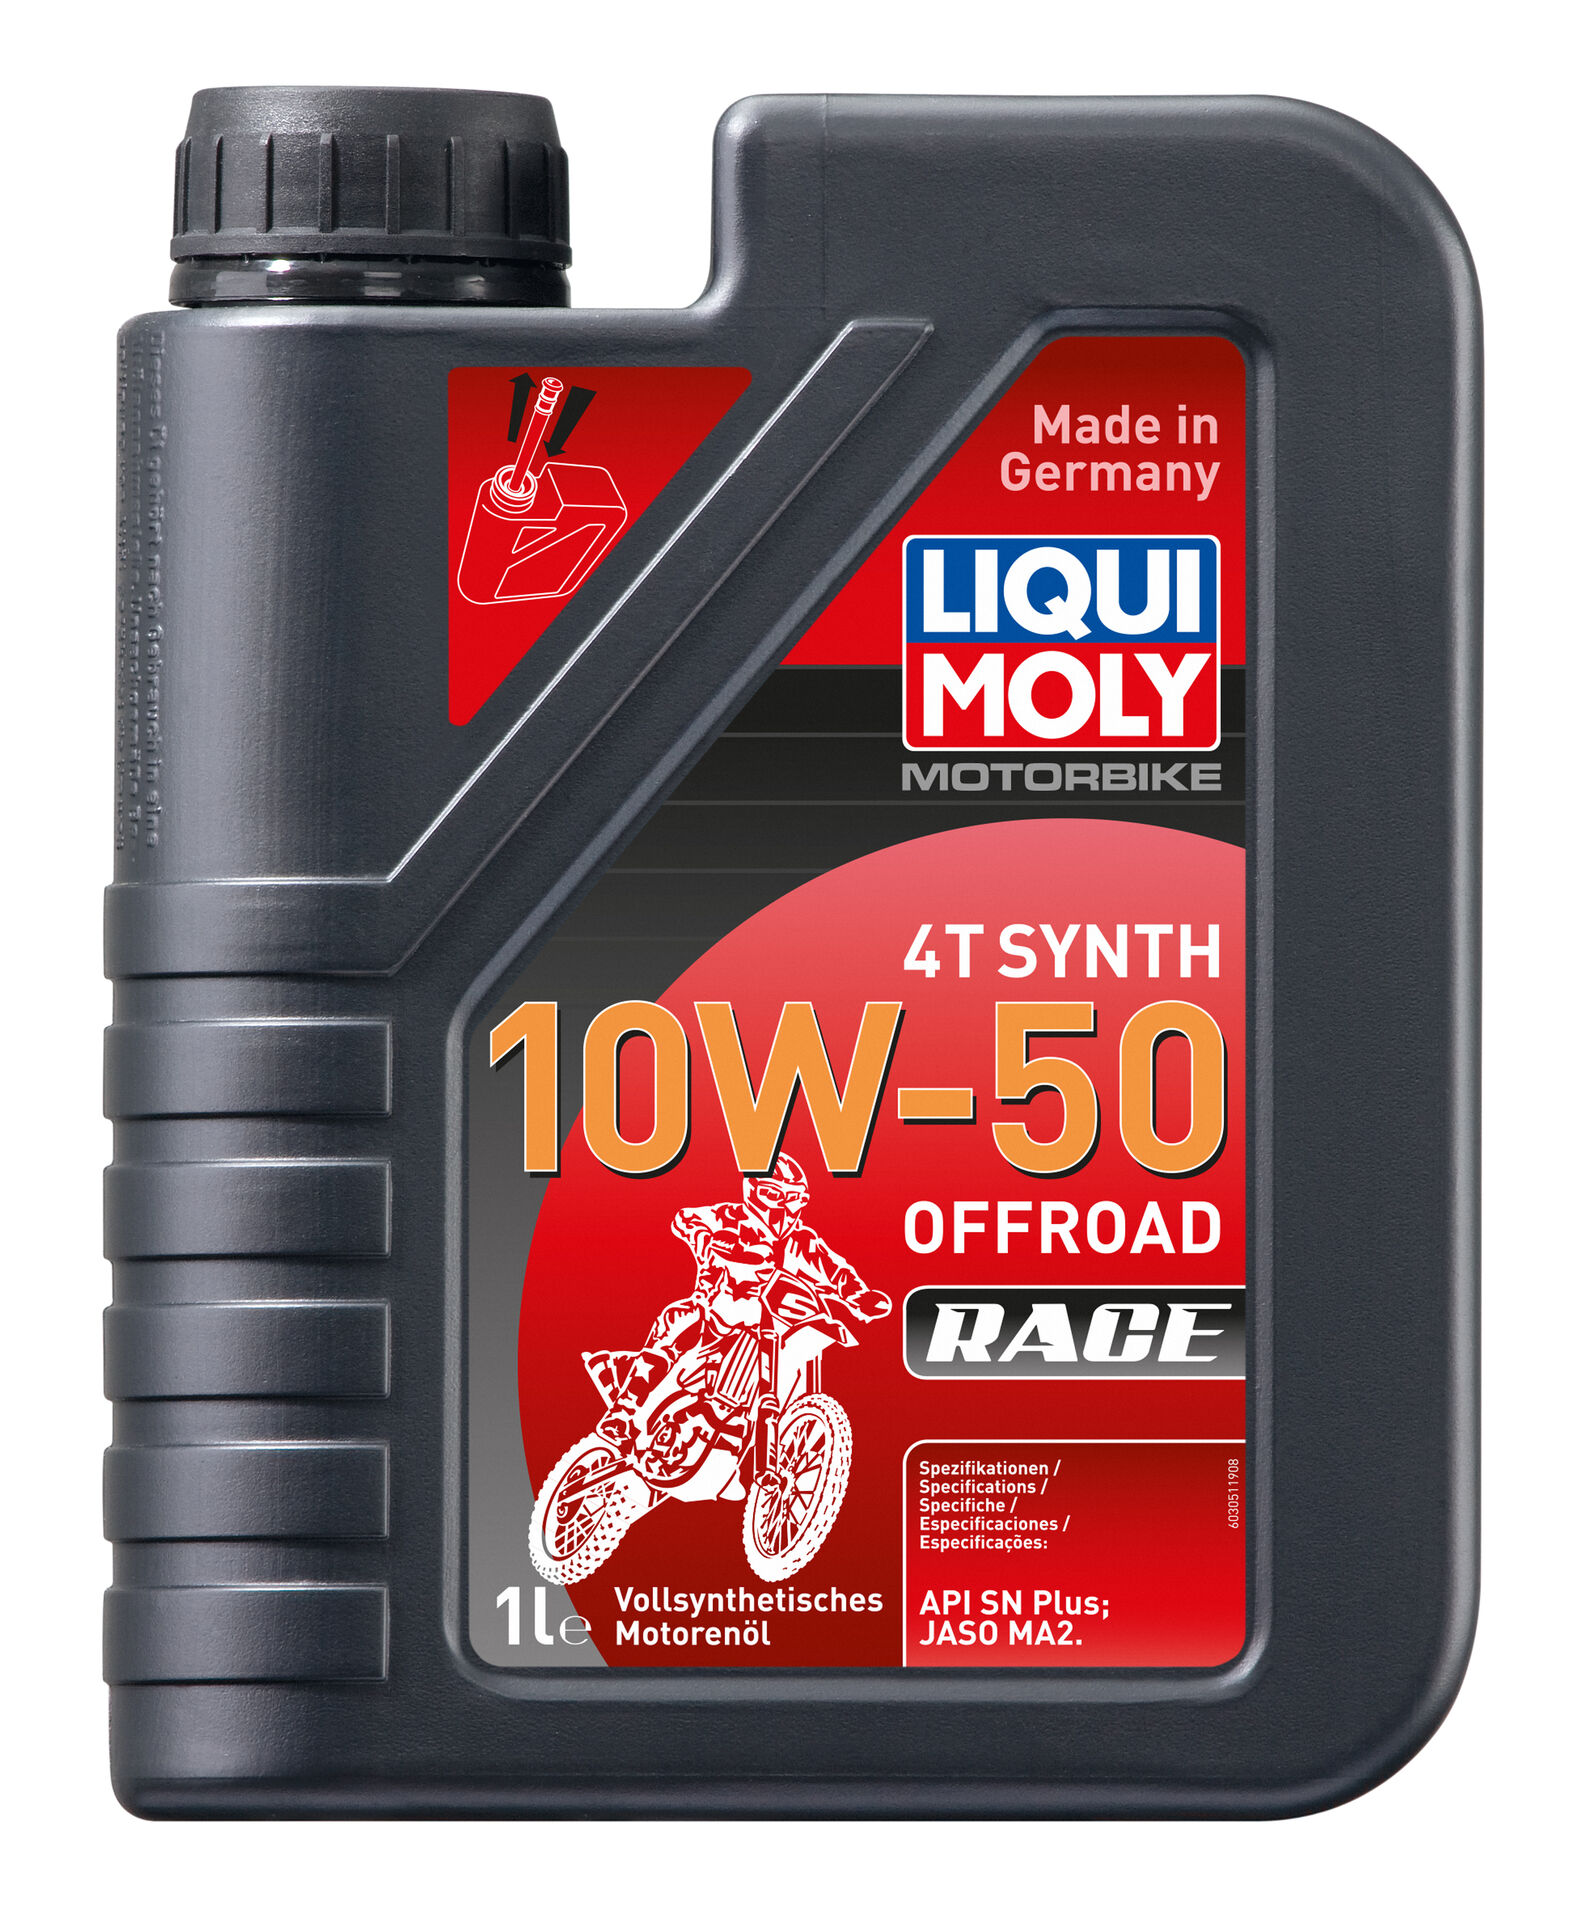 Liqui Moly Motorbike 4T Synth Motoröl Offroad Race 10W-50 Motorradöl 1L